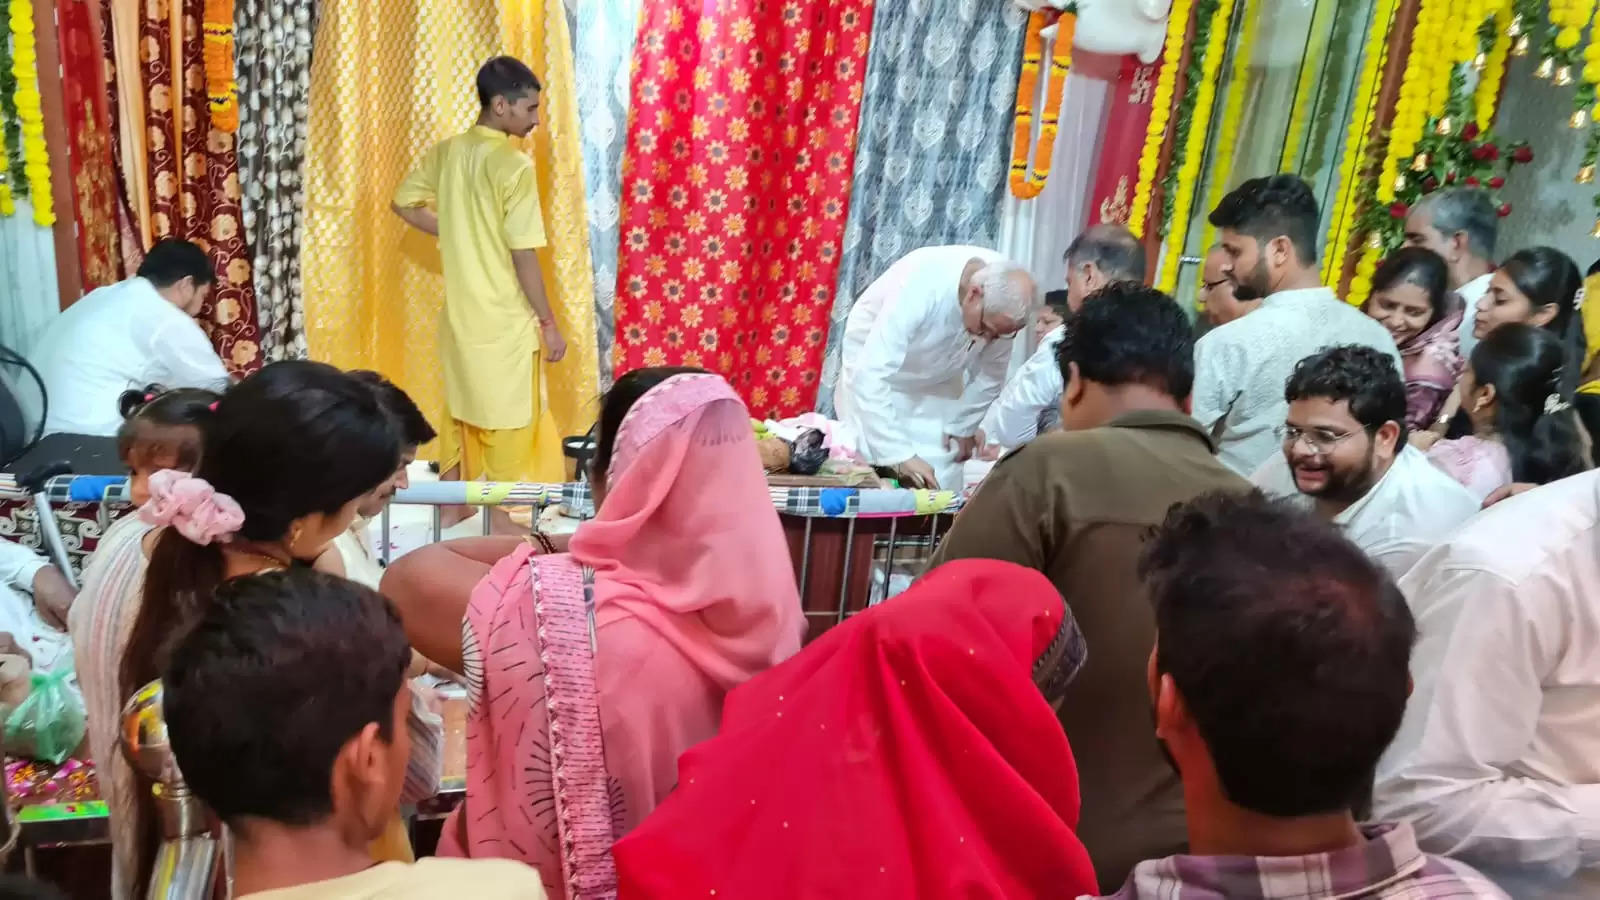 श्री गणेश मंदिर में मंगलवार को गणेश चतुर्थी के उपलक्ष्य भक्तों की दिनभर भीड़ लगी रही